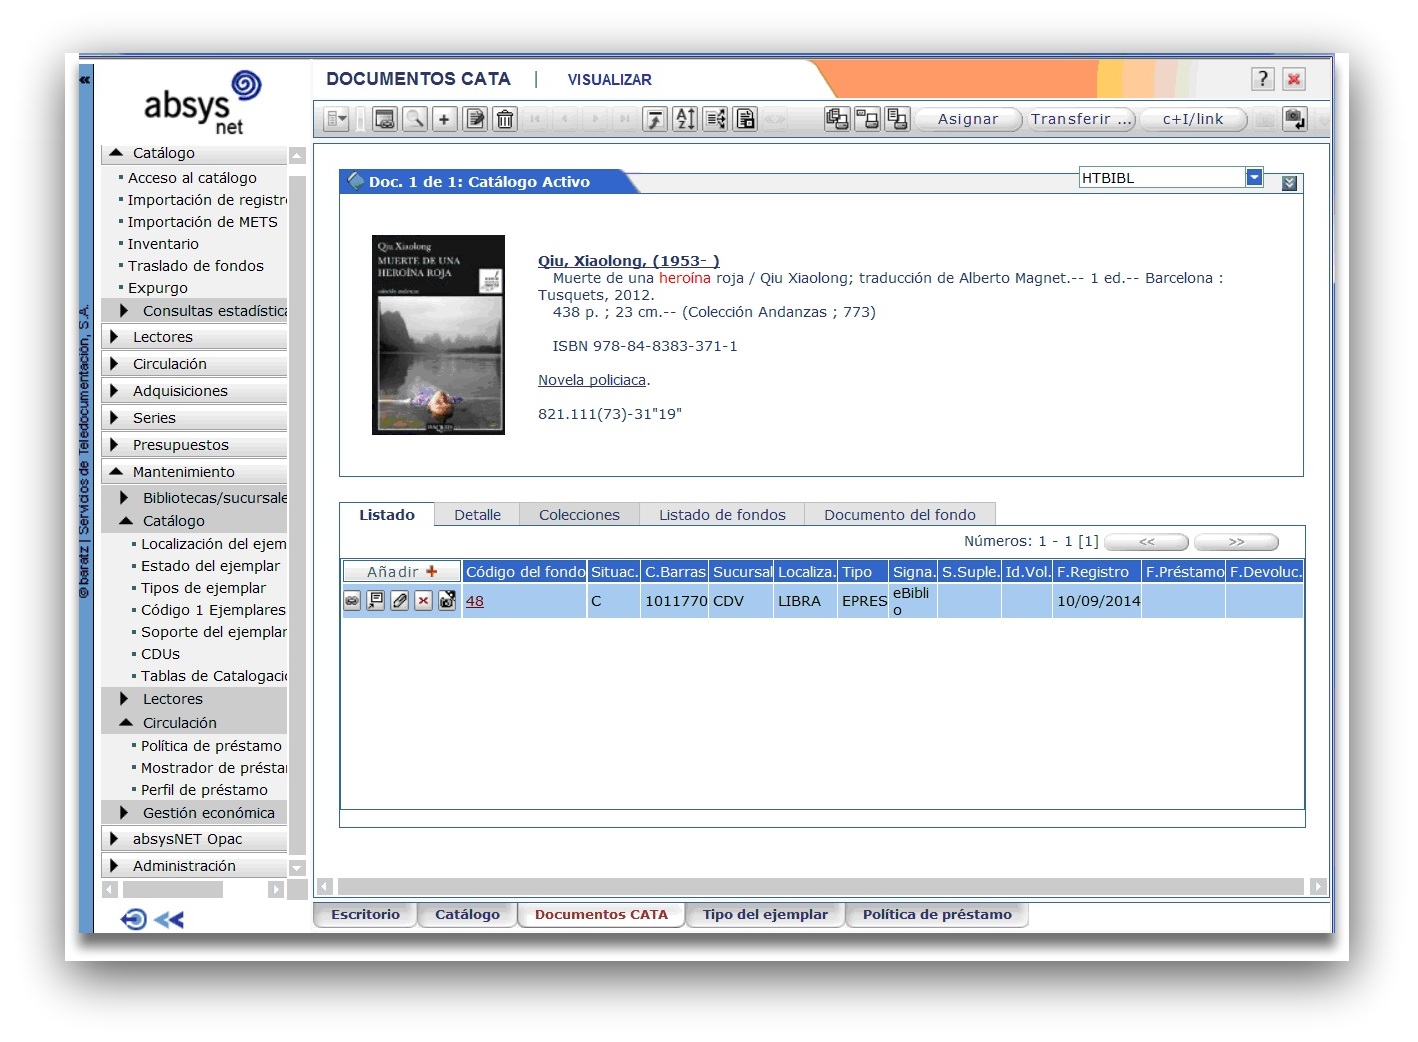 Catalogación del recurso electrónico con un ejemplar virtual asociado